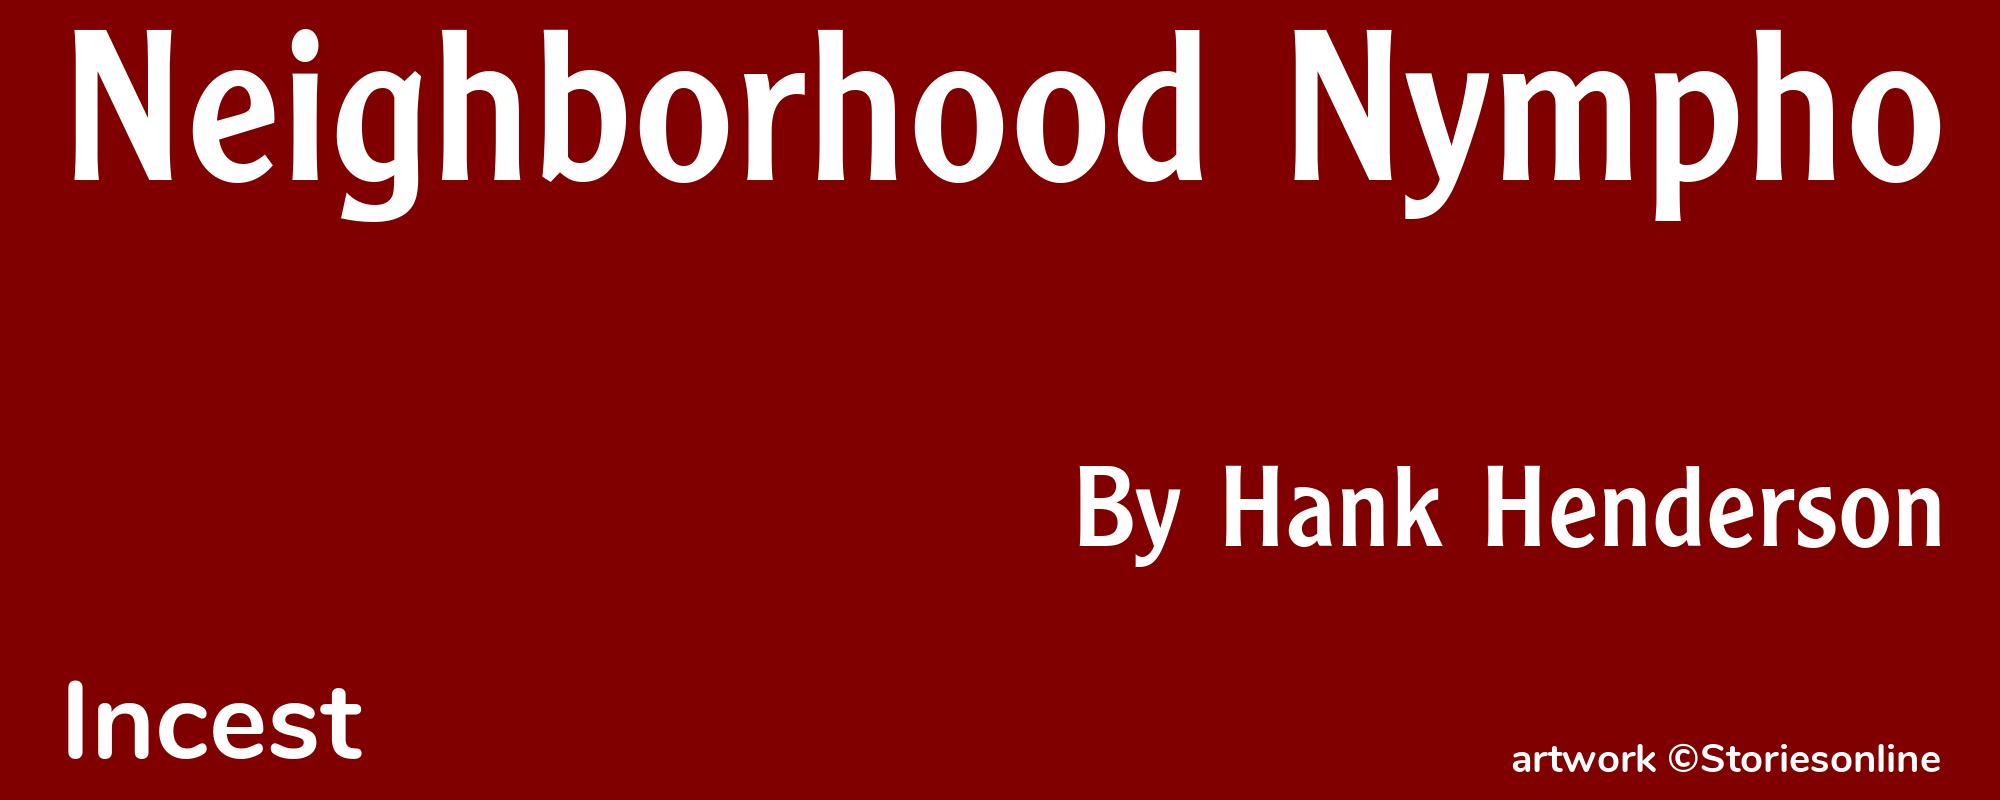 Neighborhood Nympho - Cover